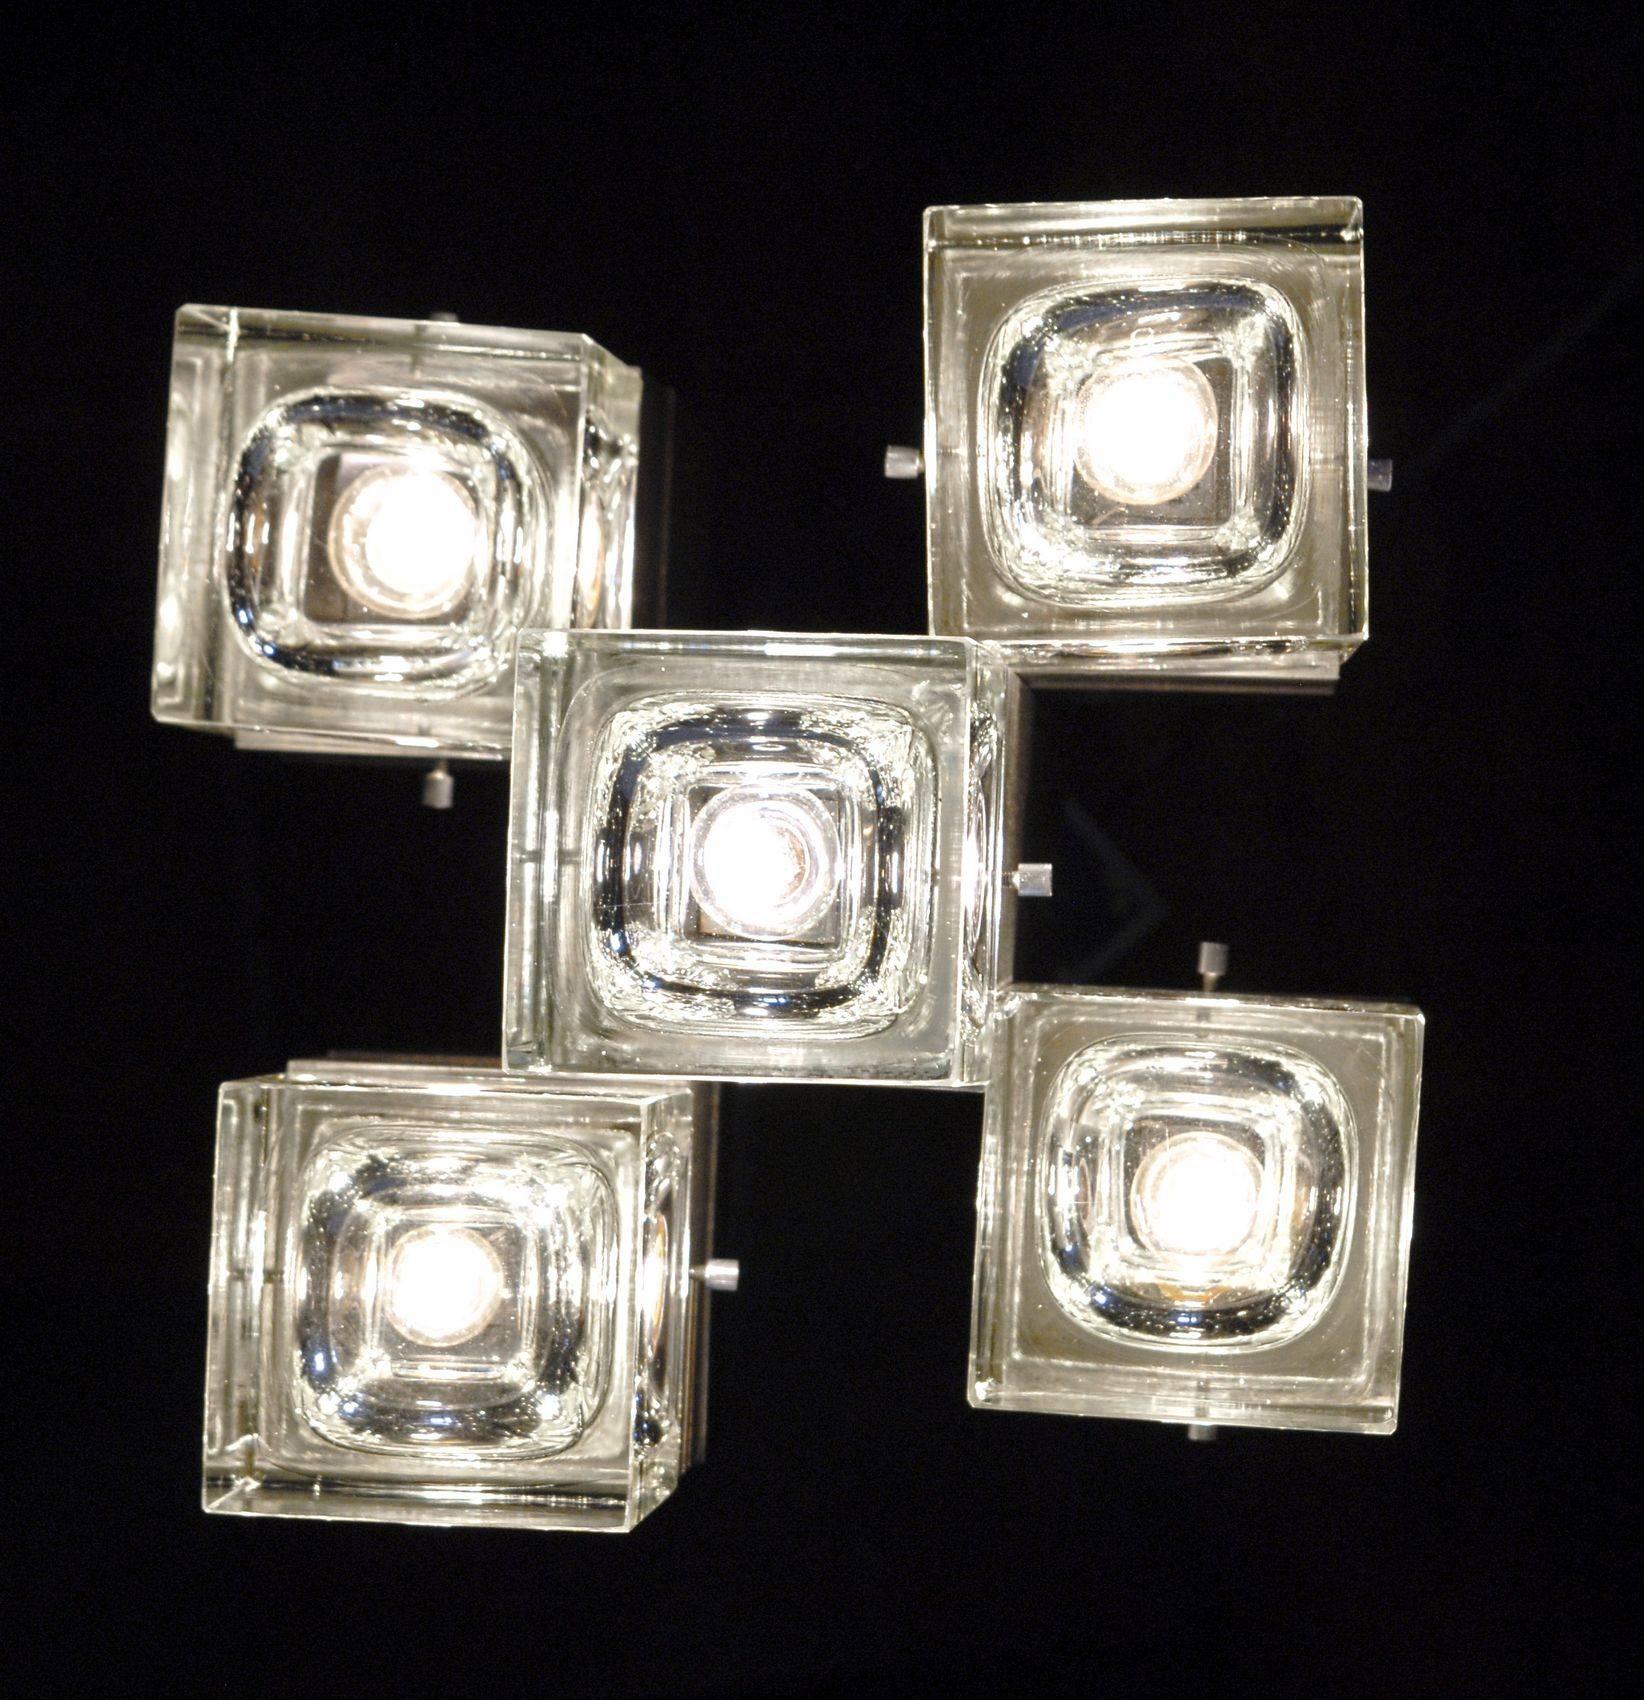 20th Century Sciolari and Fidenza Vetraria Cubosfera solid glass Chandelier Five Lights 1960s